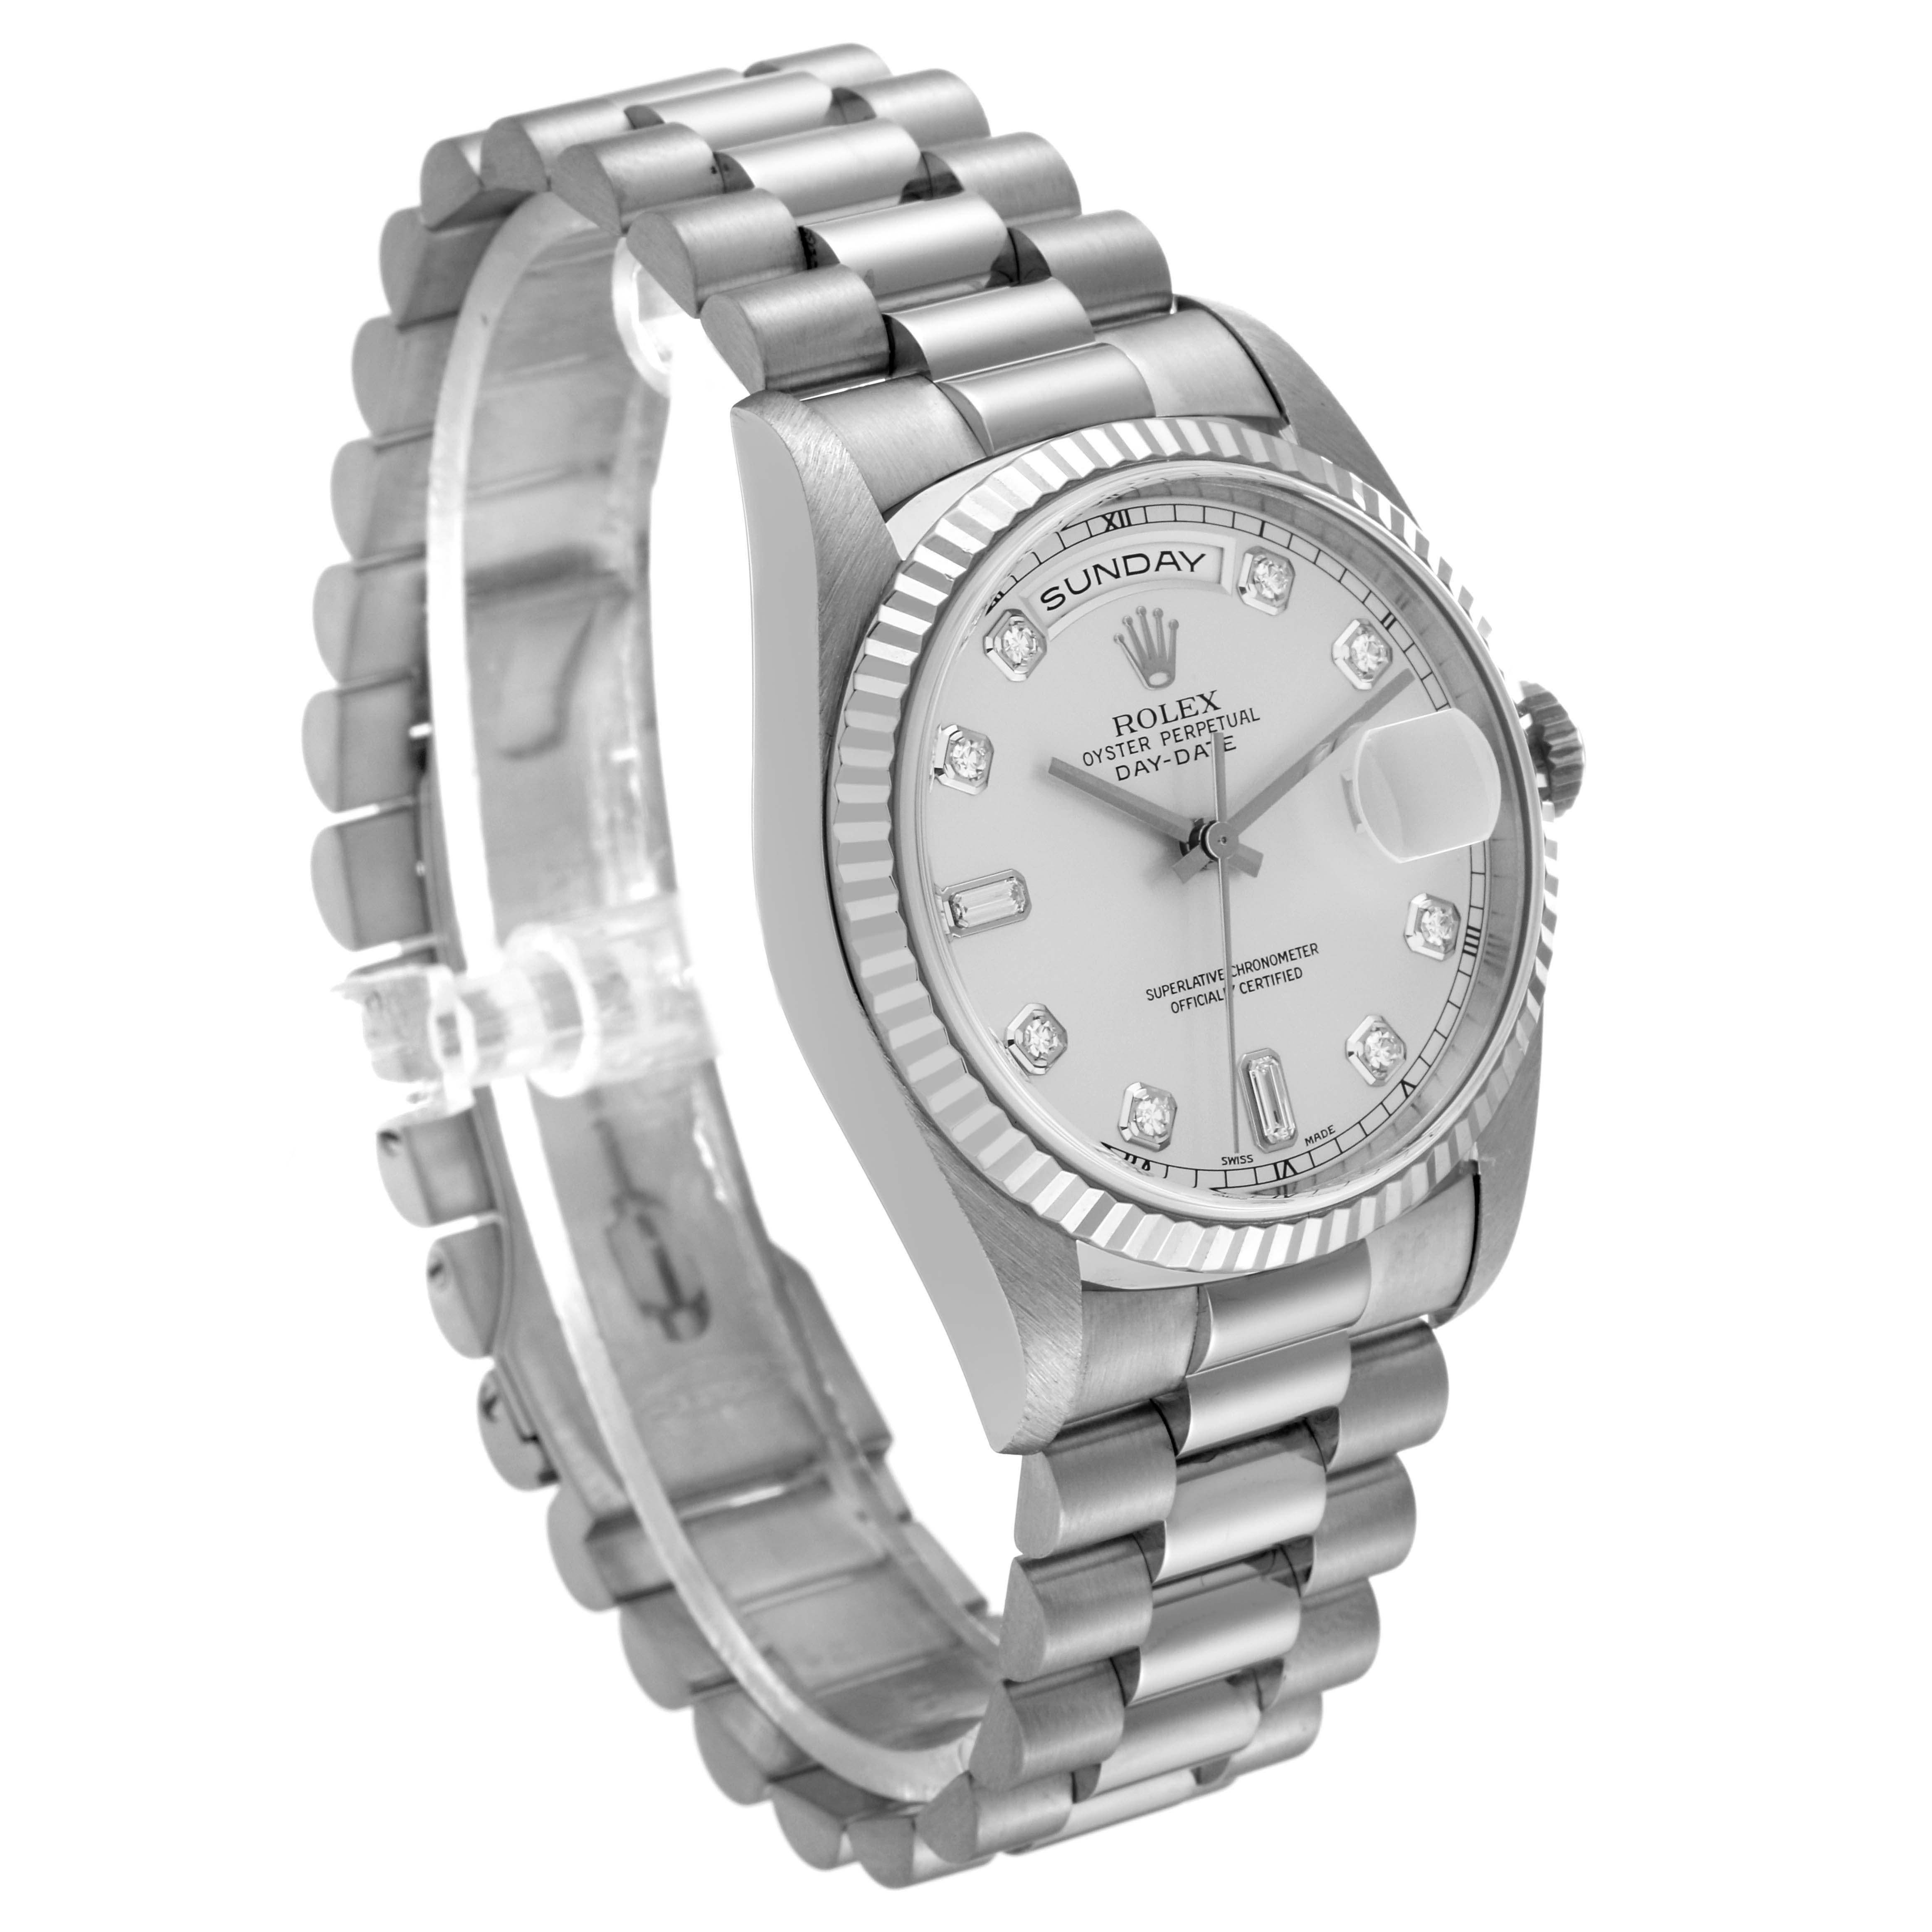 Rolex President Day-Date Montre homme or blanc cadran diamant 18239. Mouvement à remontage automatique, certifié officiellement chronomètre, avec fonction de date à réglage rapide. Boîtier oyster en or blanc 18k de 36,0 mm de diamètre. Logo Rolex